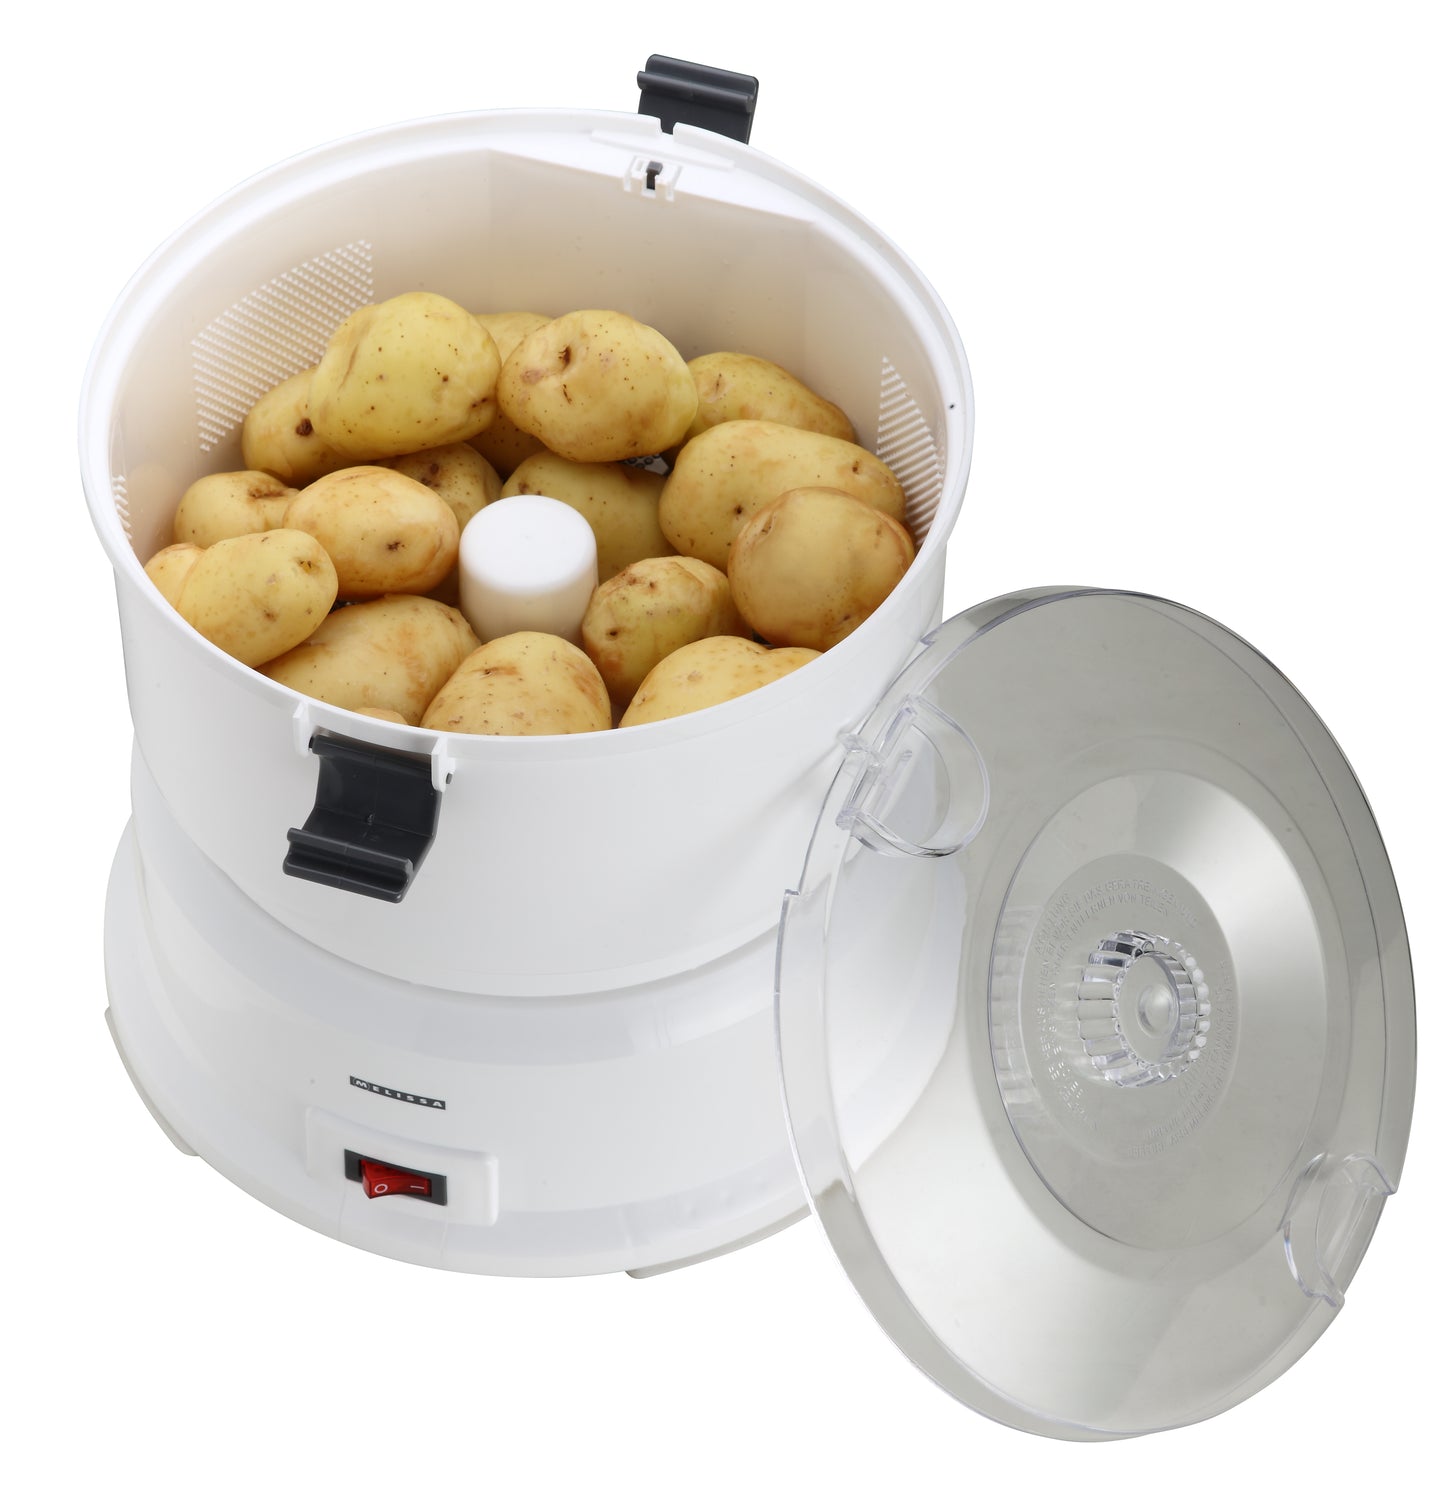 Melissa 16220009 - Elektrische aardappelschiller met een capaciteit van 1 kg - Aardappelschrapmachine 85W - Wit